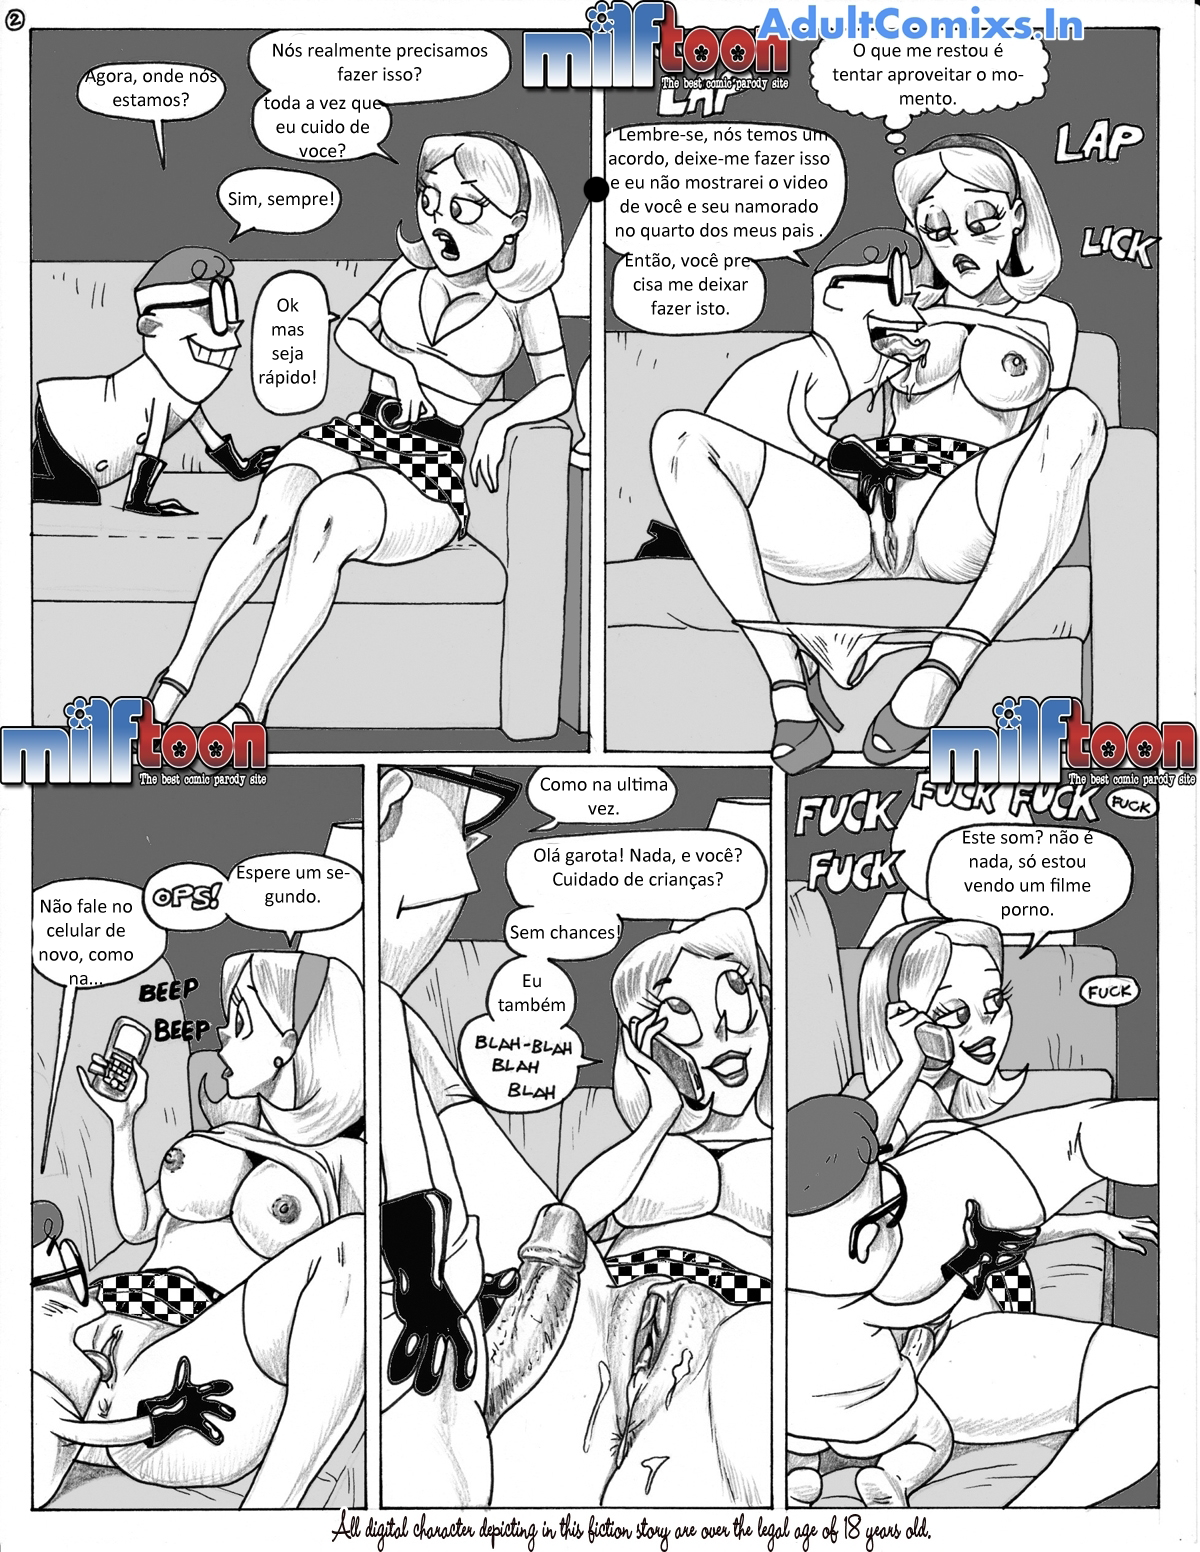 Laboratorio de Dexter Cartoon Pornô - Foto 2